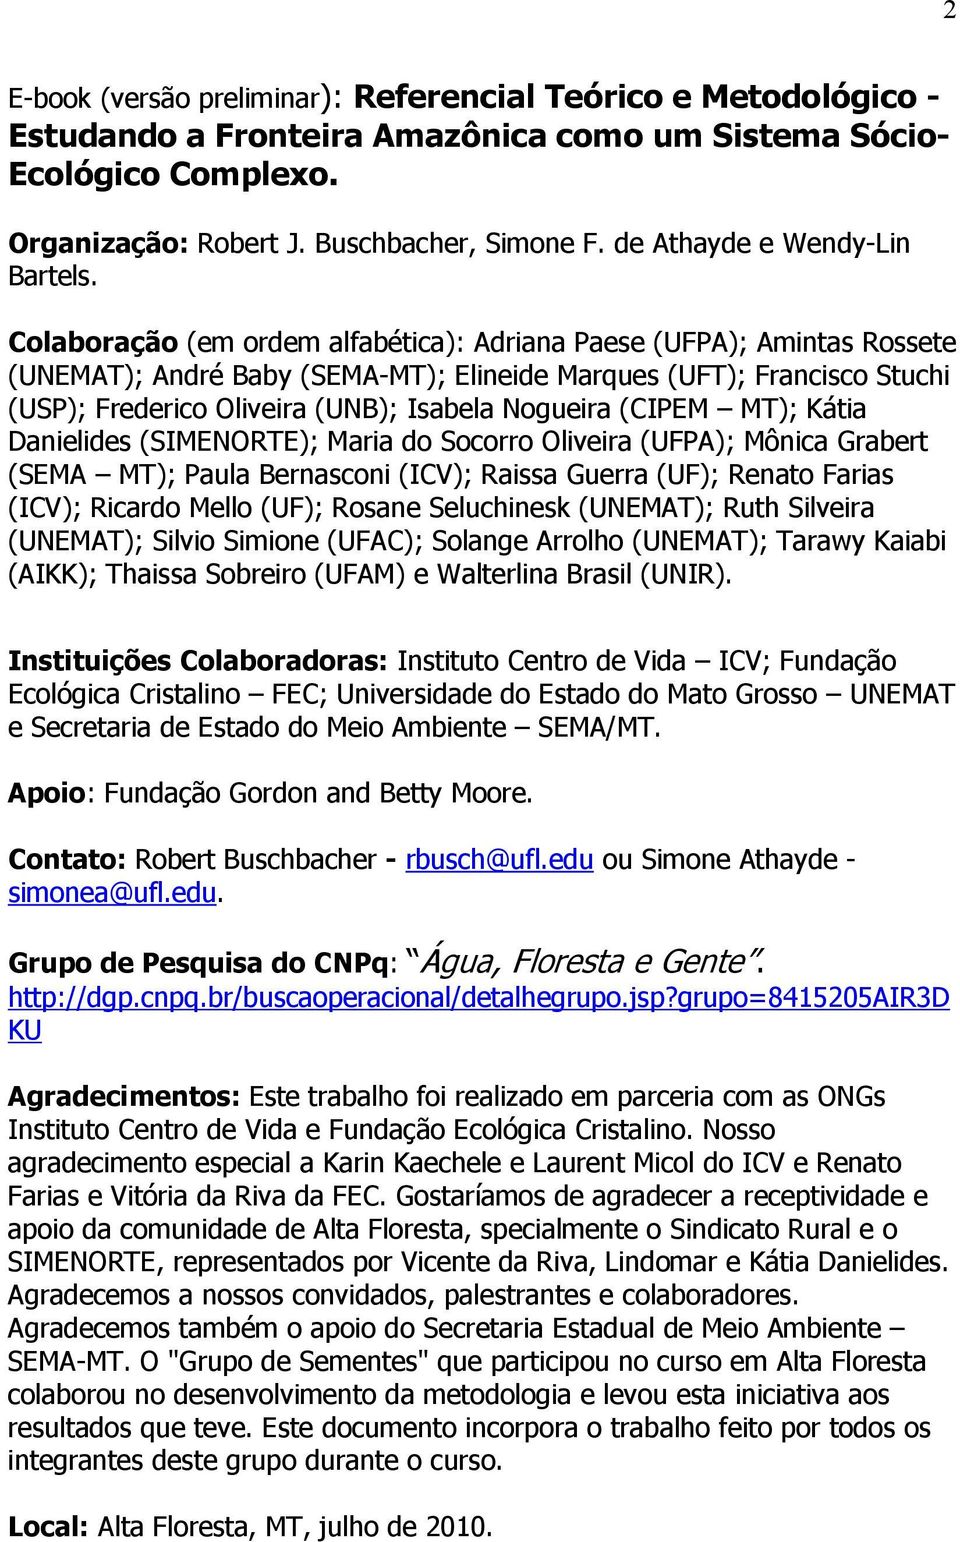 Colaboração (em ordem alfabética): Adriana Paese (UFPA); Amintas Rossete (UNEMAT); André Baby (SEMA-MT); Elineide Marques (UFT); Francisco Stuchi (USP); Frederico Oliveira (UNB); Isabela Nogueira